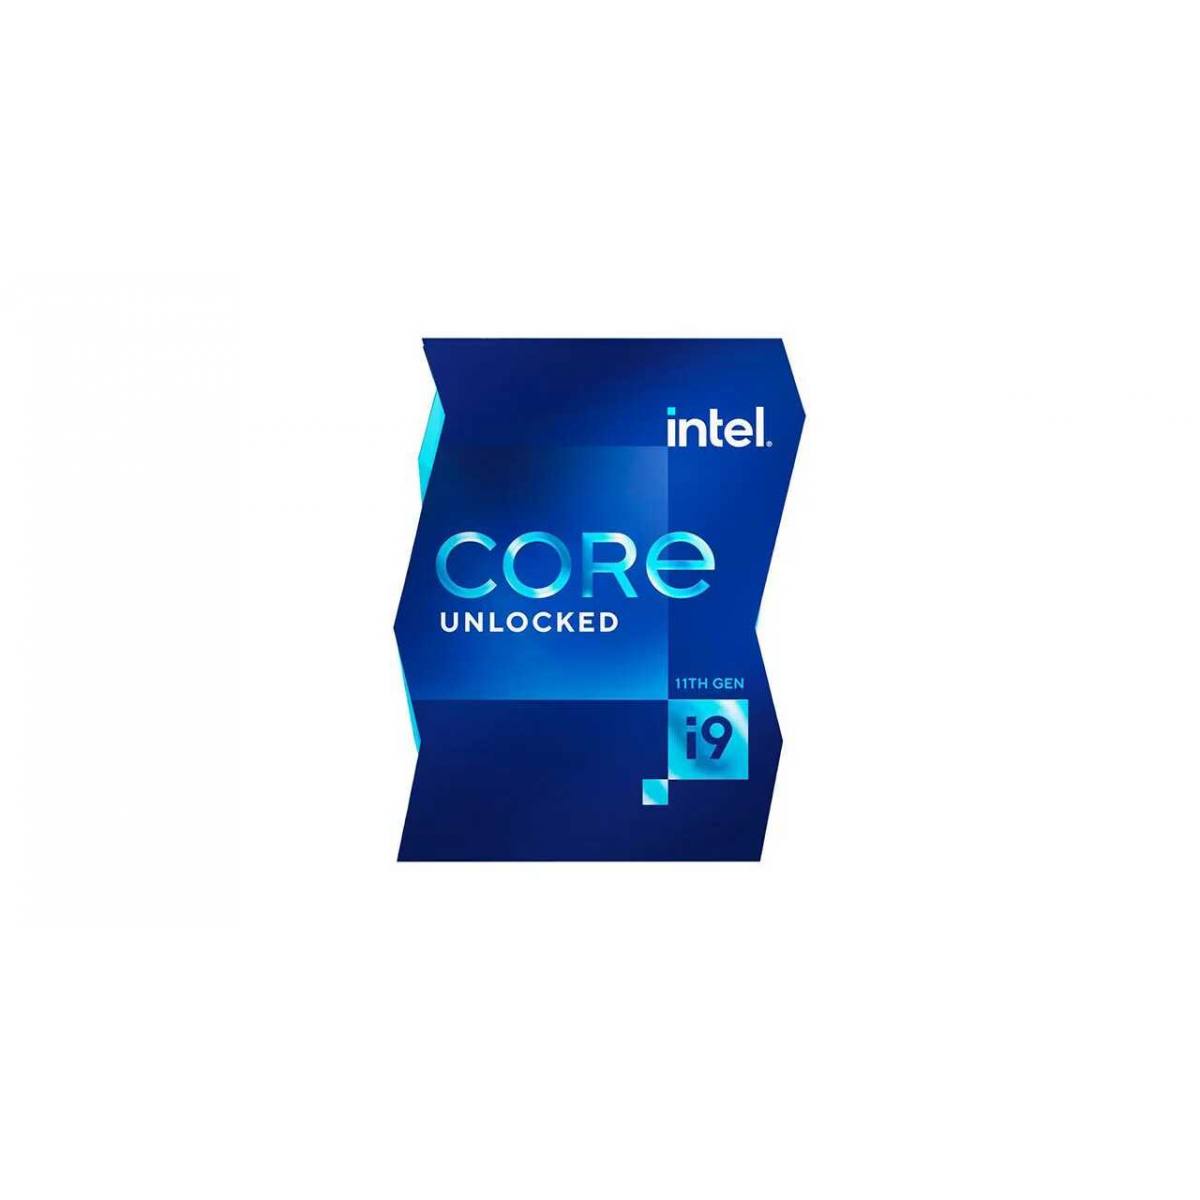 CPU Intel Core i9 11900K 3.5GHz turbo up to 5.3Ghz | 8 nhân 16 luồng | 16MB Cache, 125W